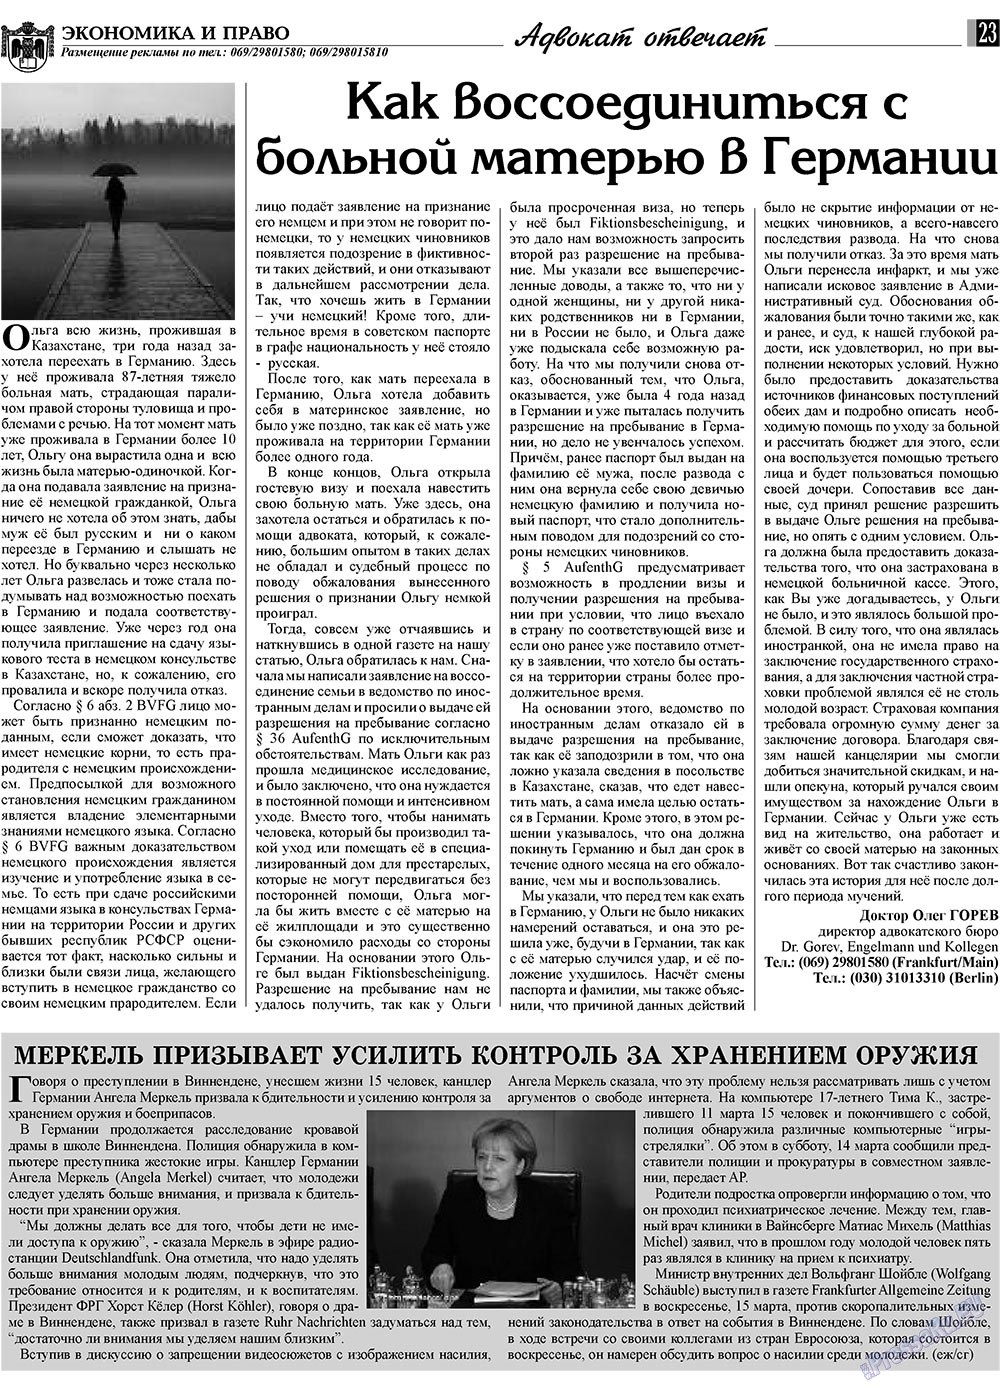 Экономика и право, газета. 2009 №4 стр.23